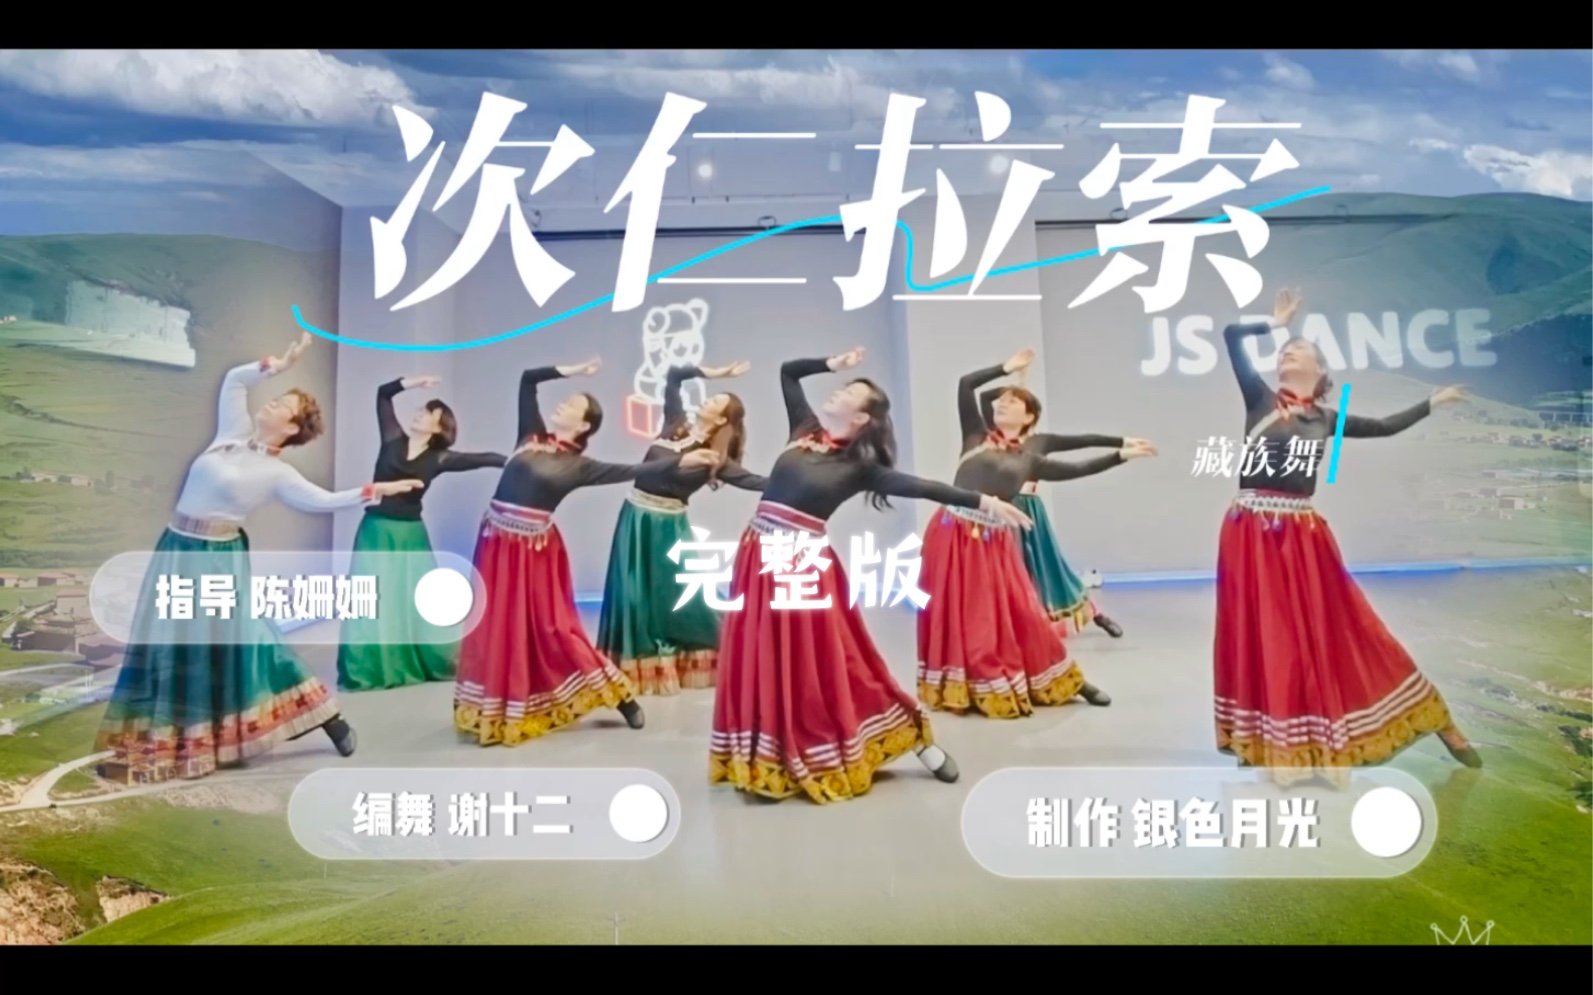 全网难寻的谢十二藏族舞《次仁拉索》完整版来了！感谢姗姗老师的悉心指导￼！我们又毕业一支舞啦！